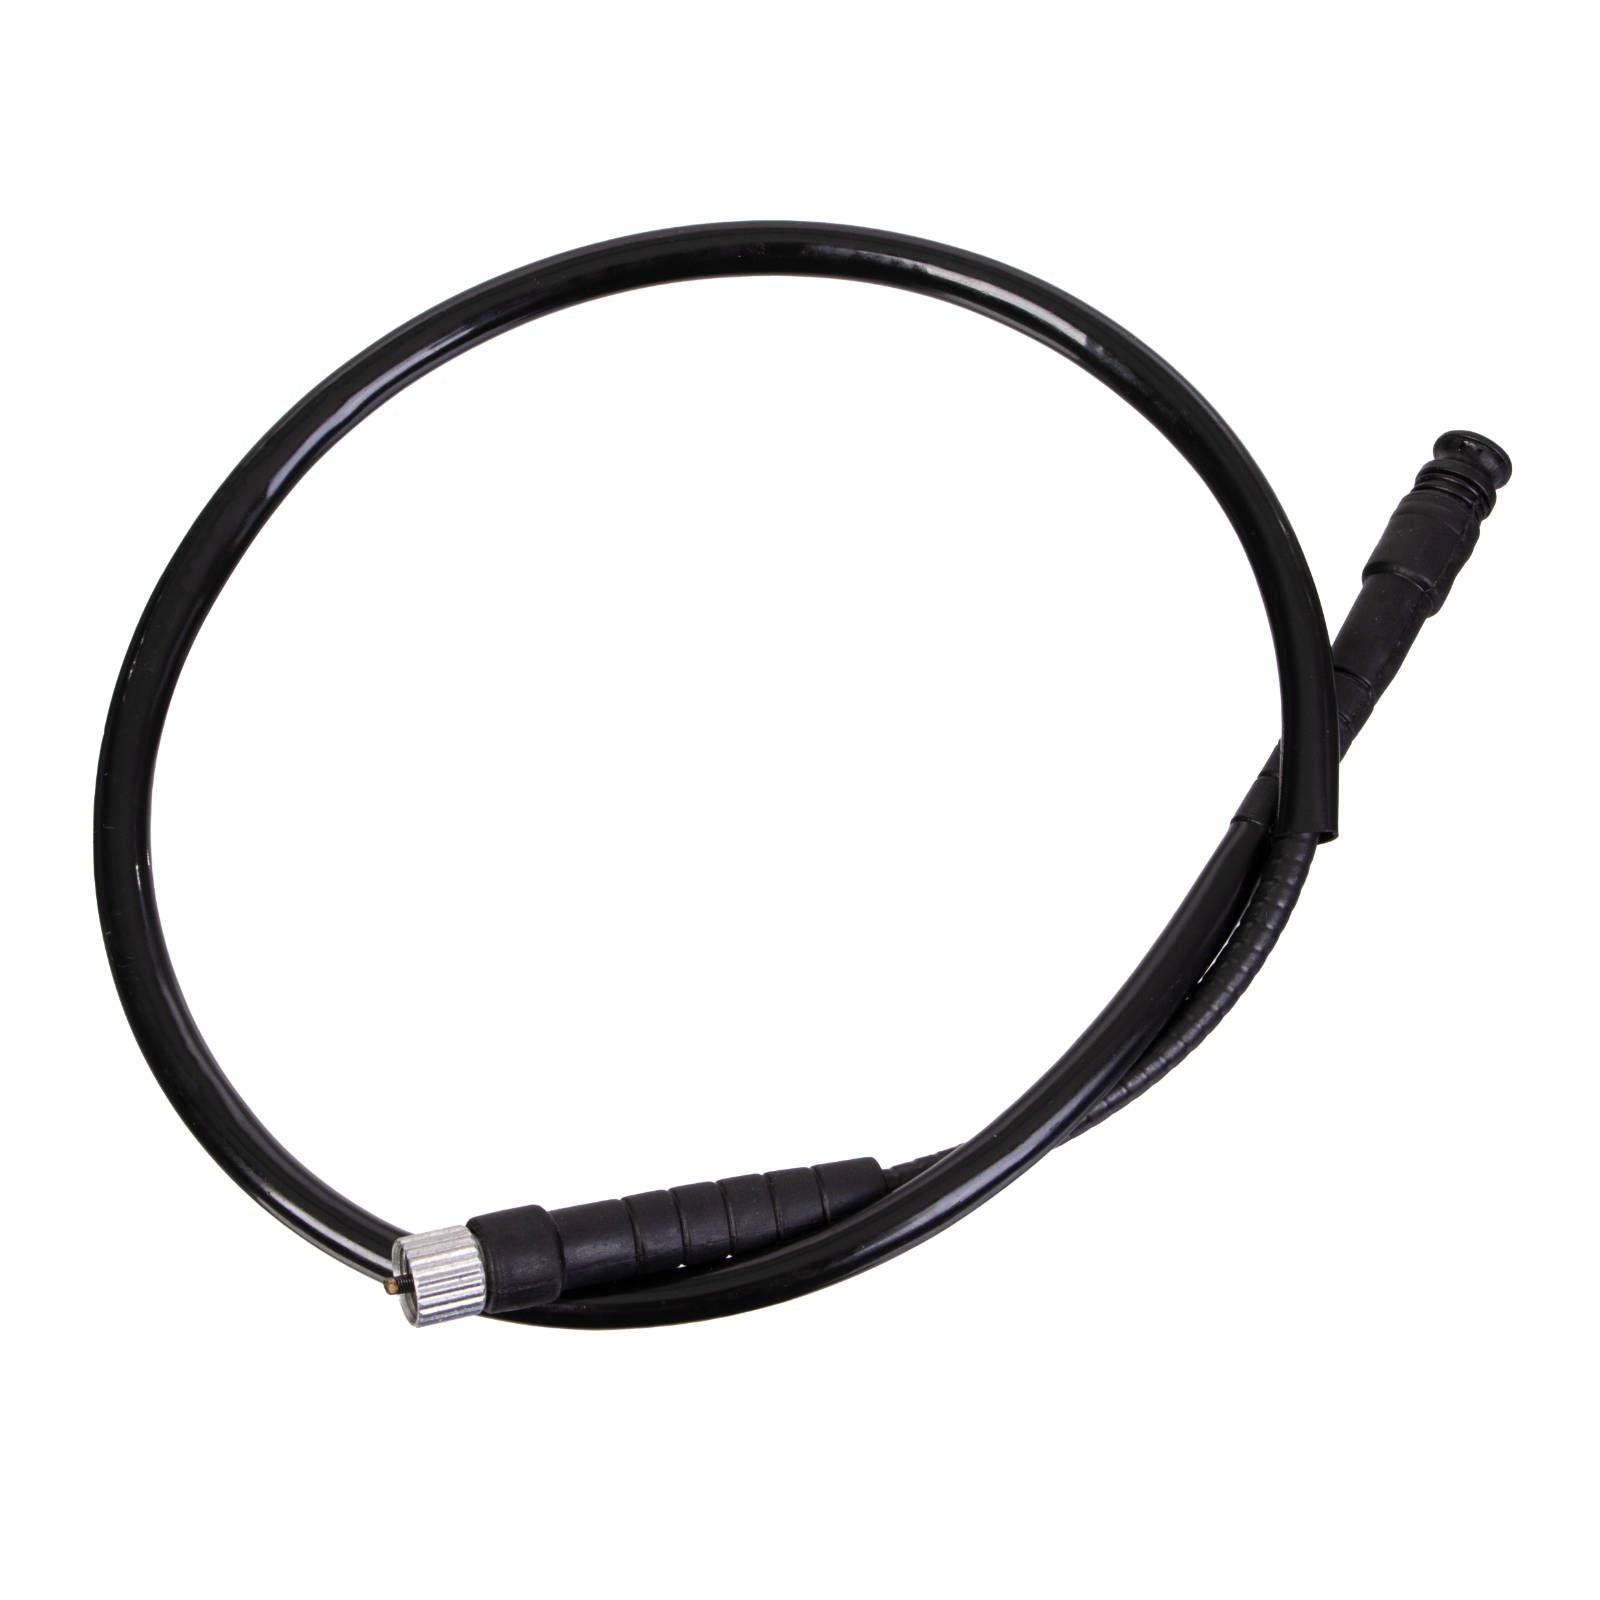 New WHITES Speedo Cable For Honda XR190 #WPCC01024